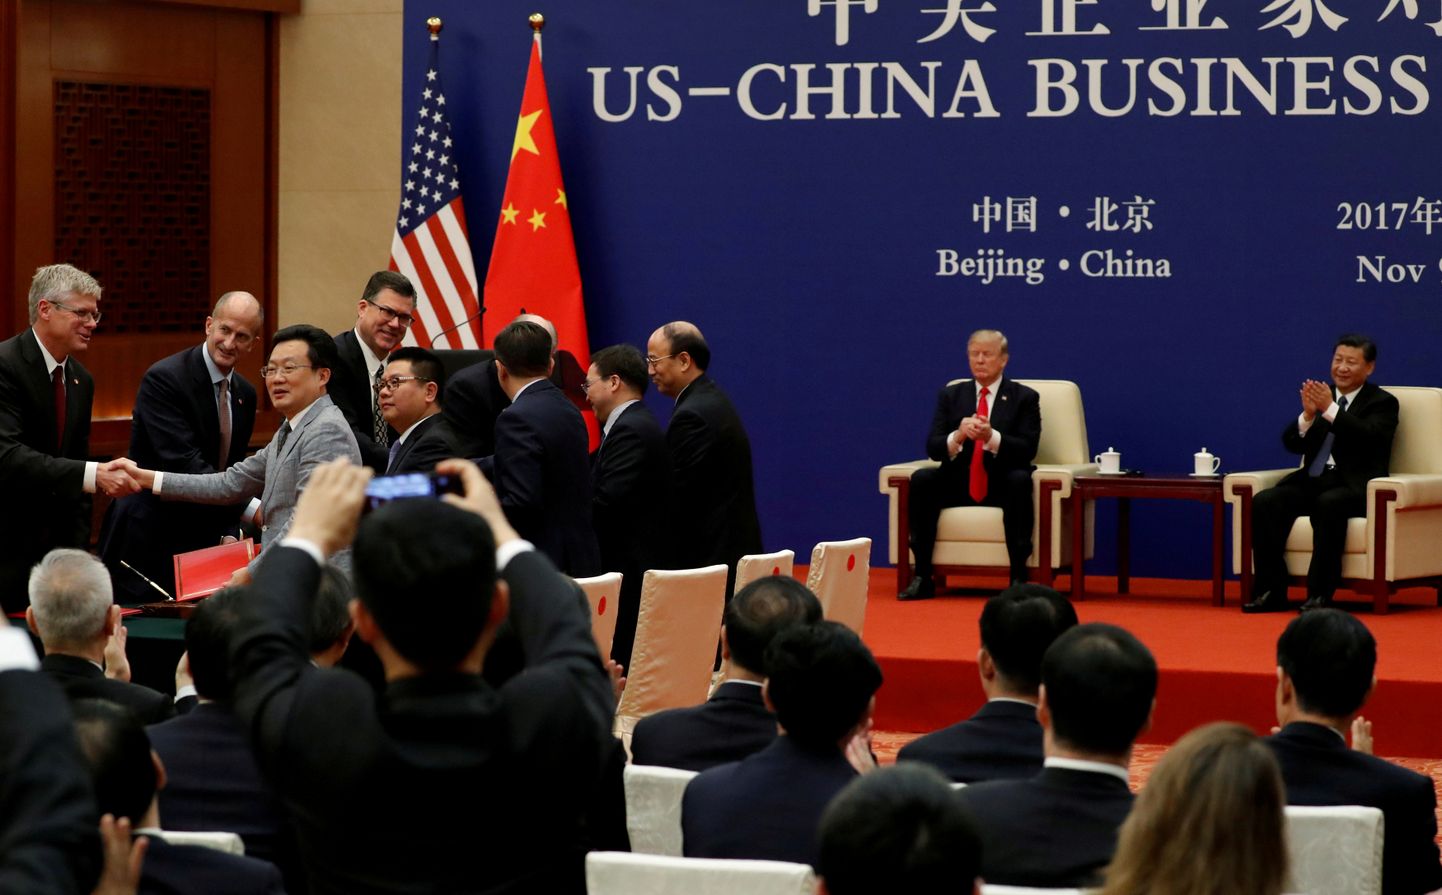 Hiina president Xi Jinping ja Ameerika Ühendriikide president Donald Trump mullu tunnistamas kahe riigi ärikoostöö lepingute allkirjastamist Pekingis.